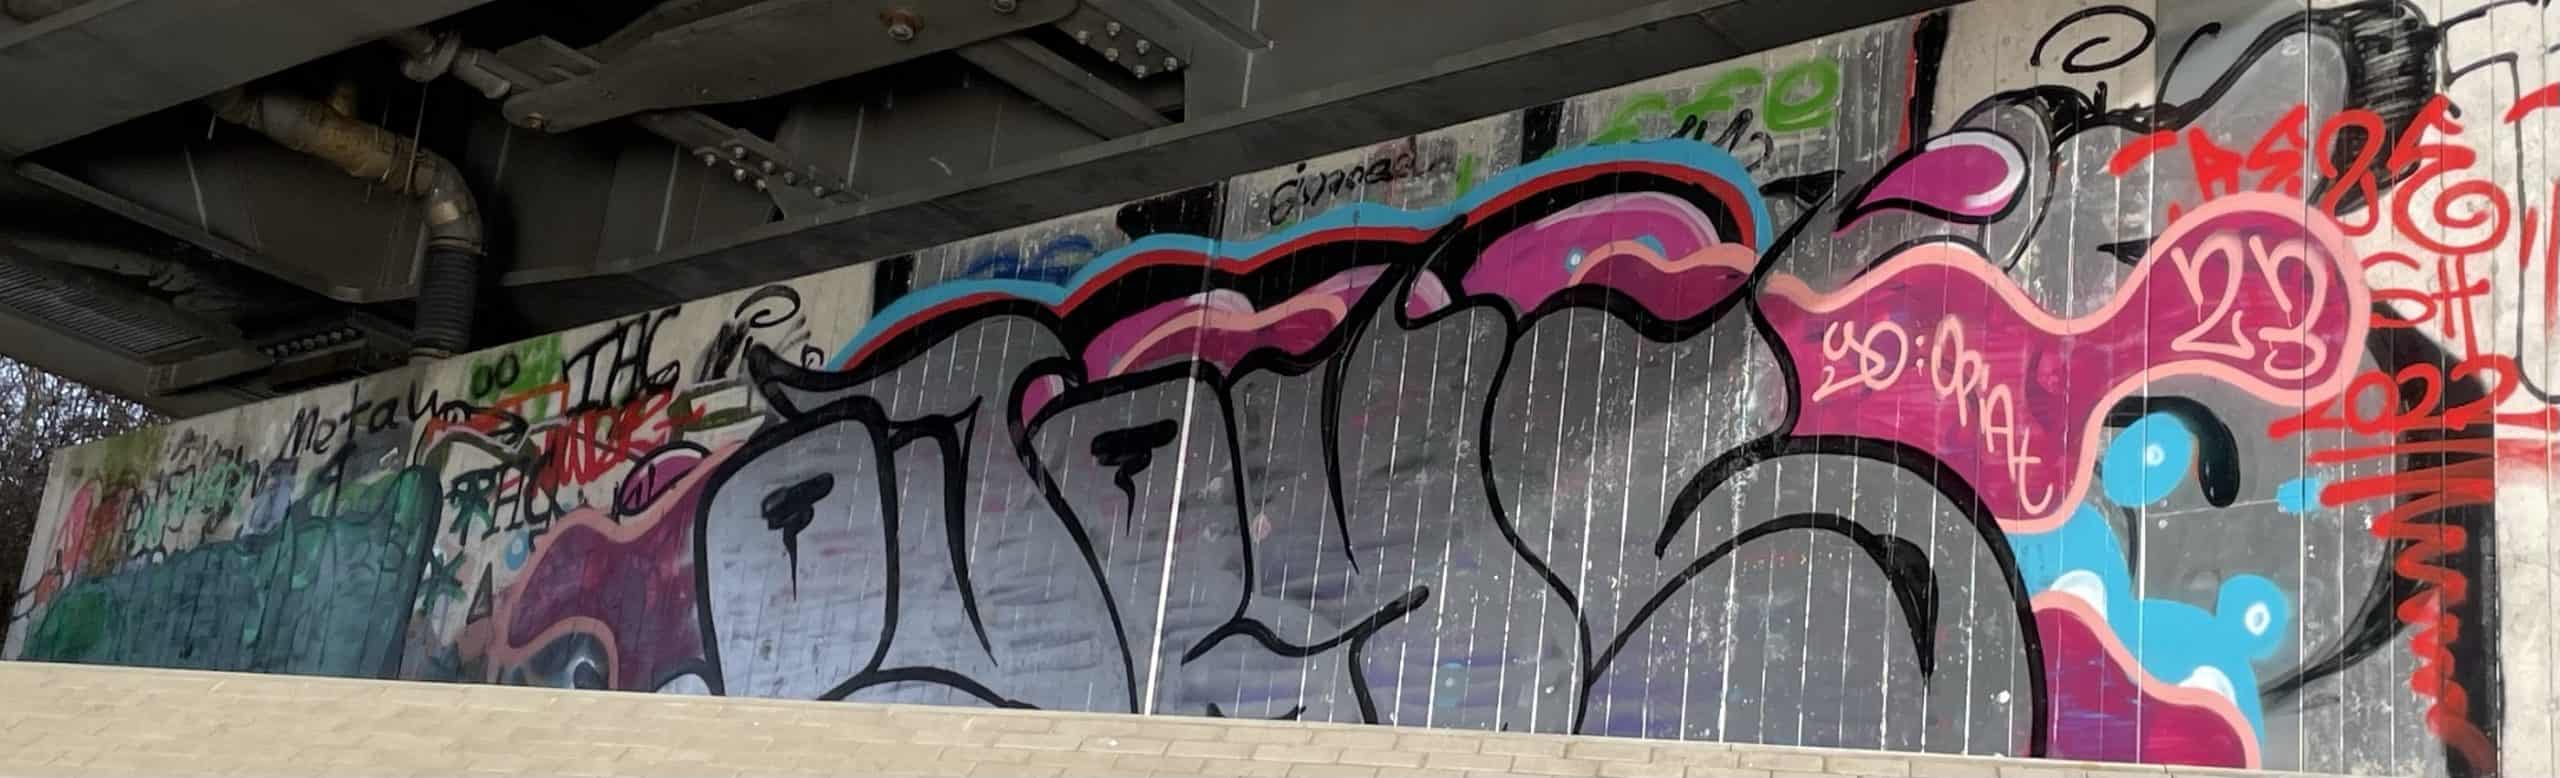 Graffiti unter einer Eisenbahnbrücke